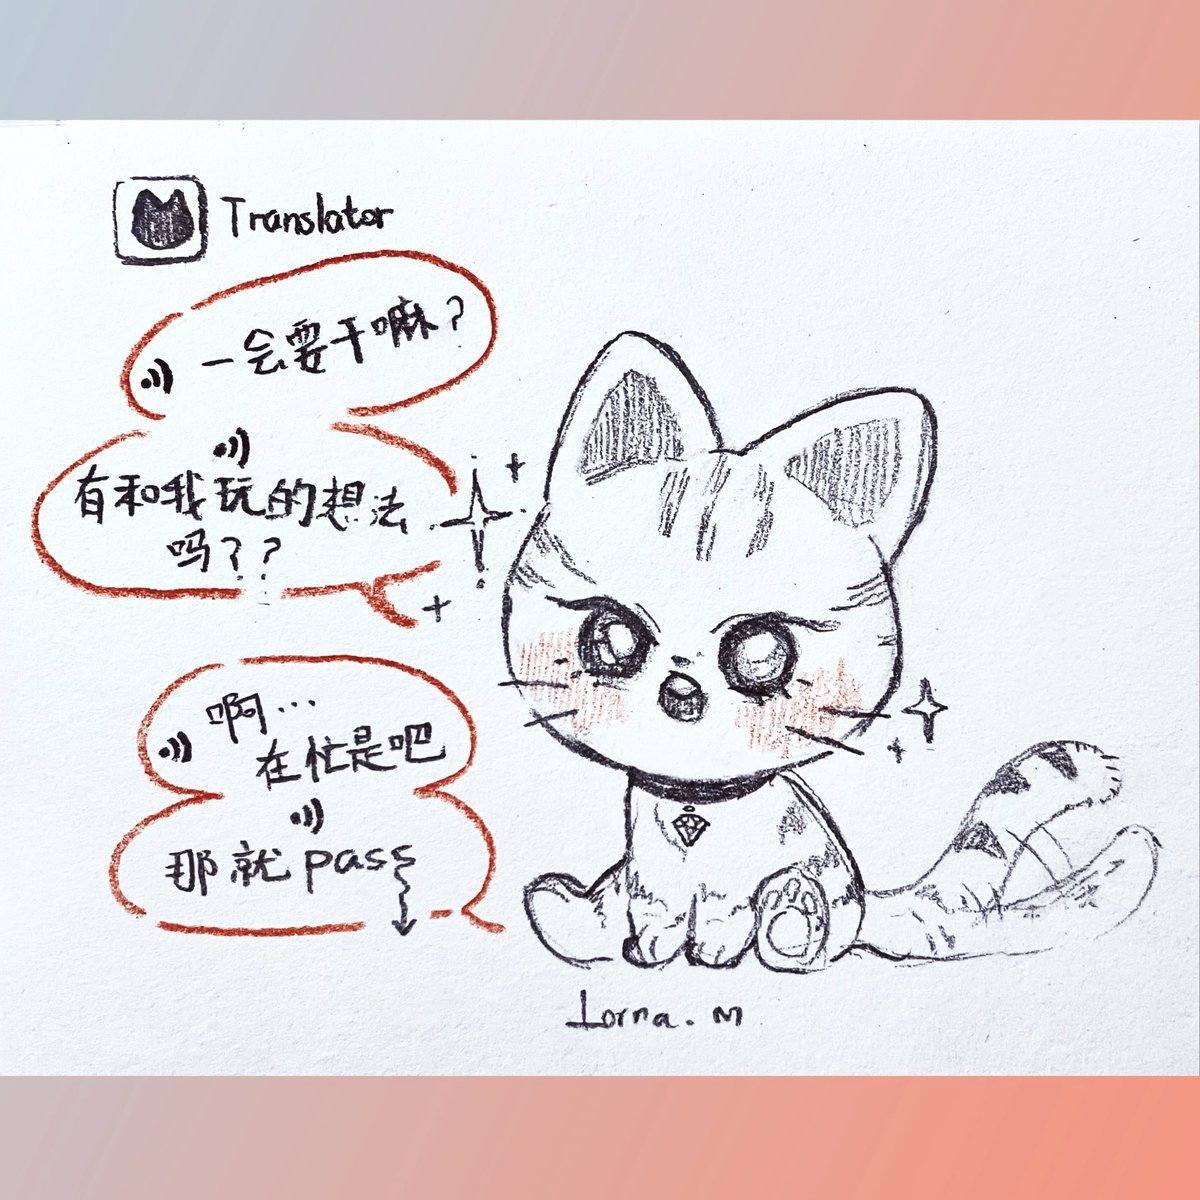 这两天,李哥的泡泡,像那种宠物翻译app,翻译出来的猫主子的话
#straykids #leeknow 